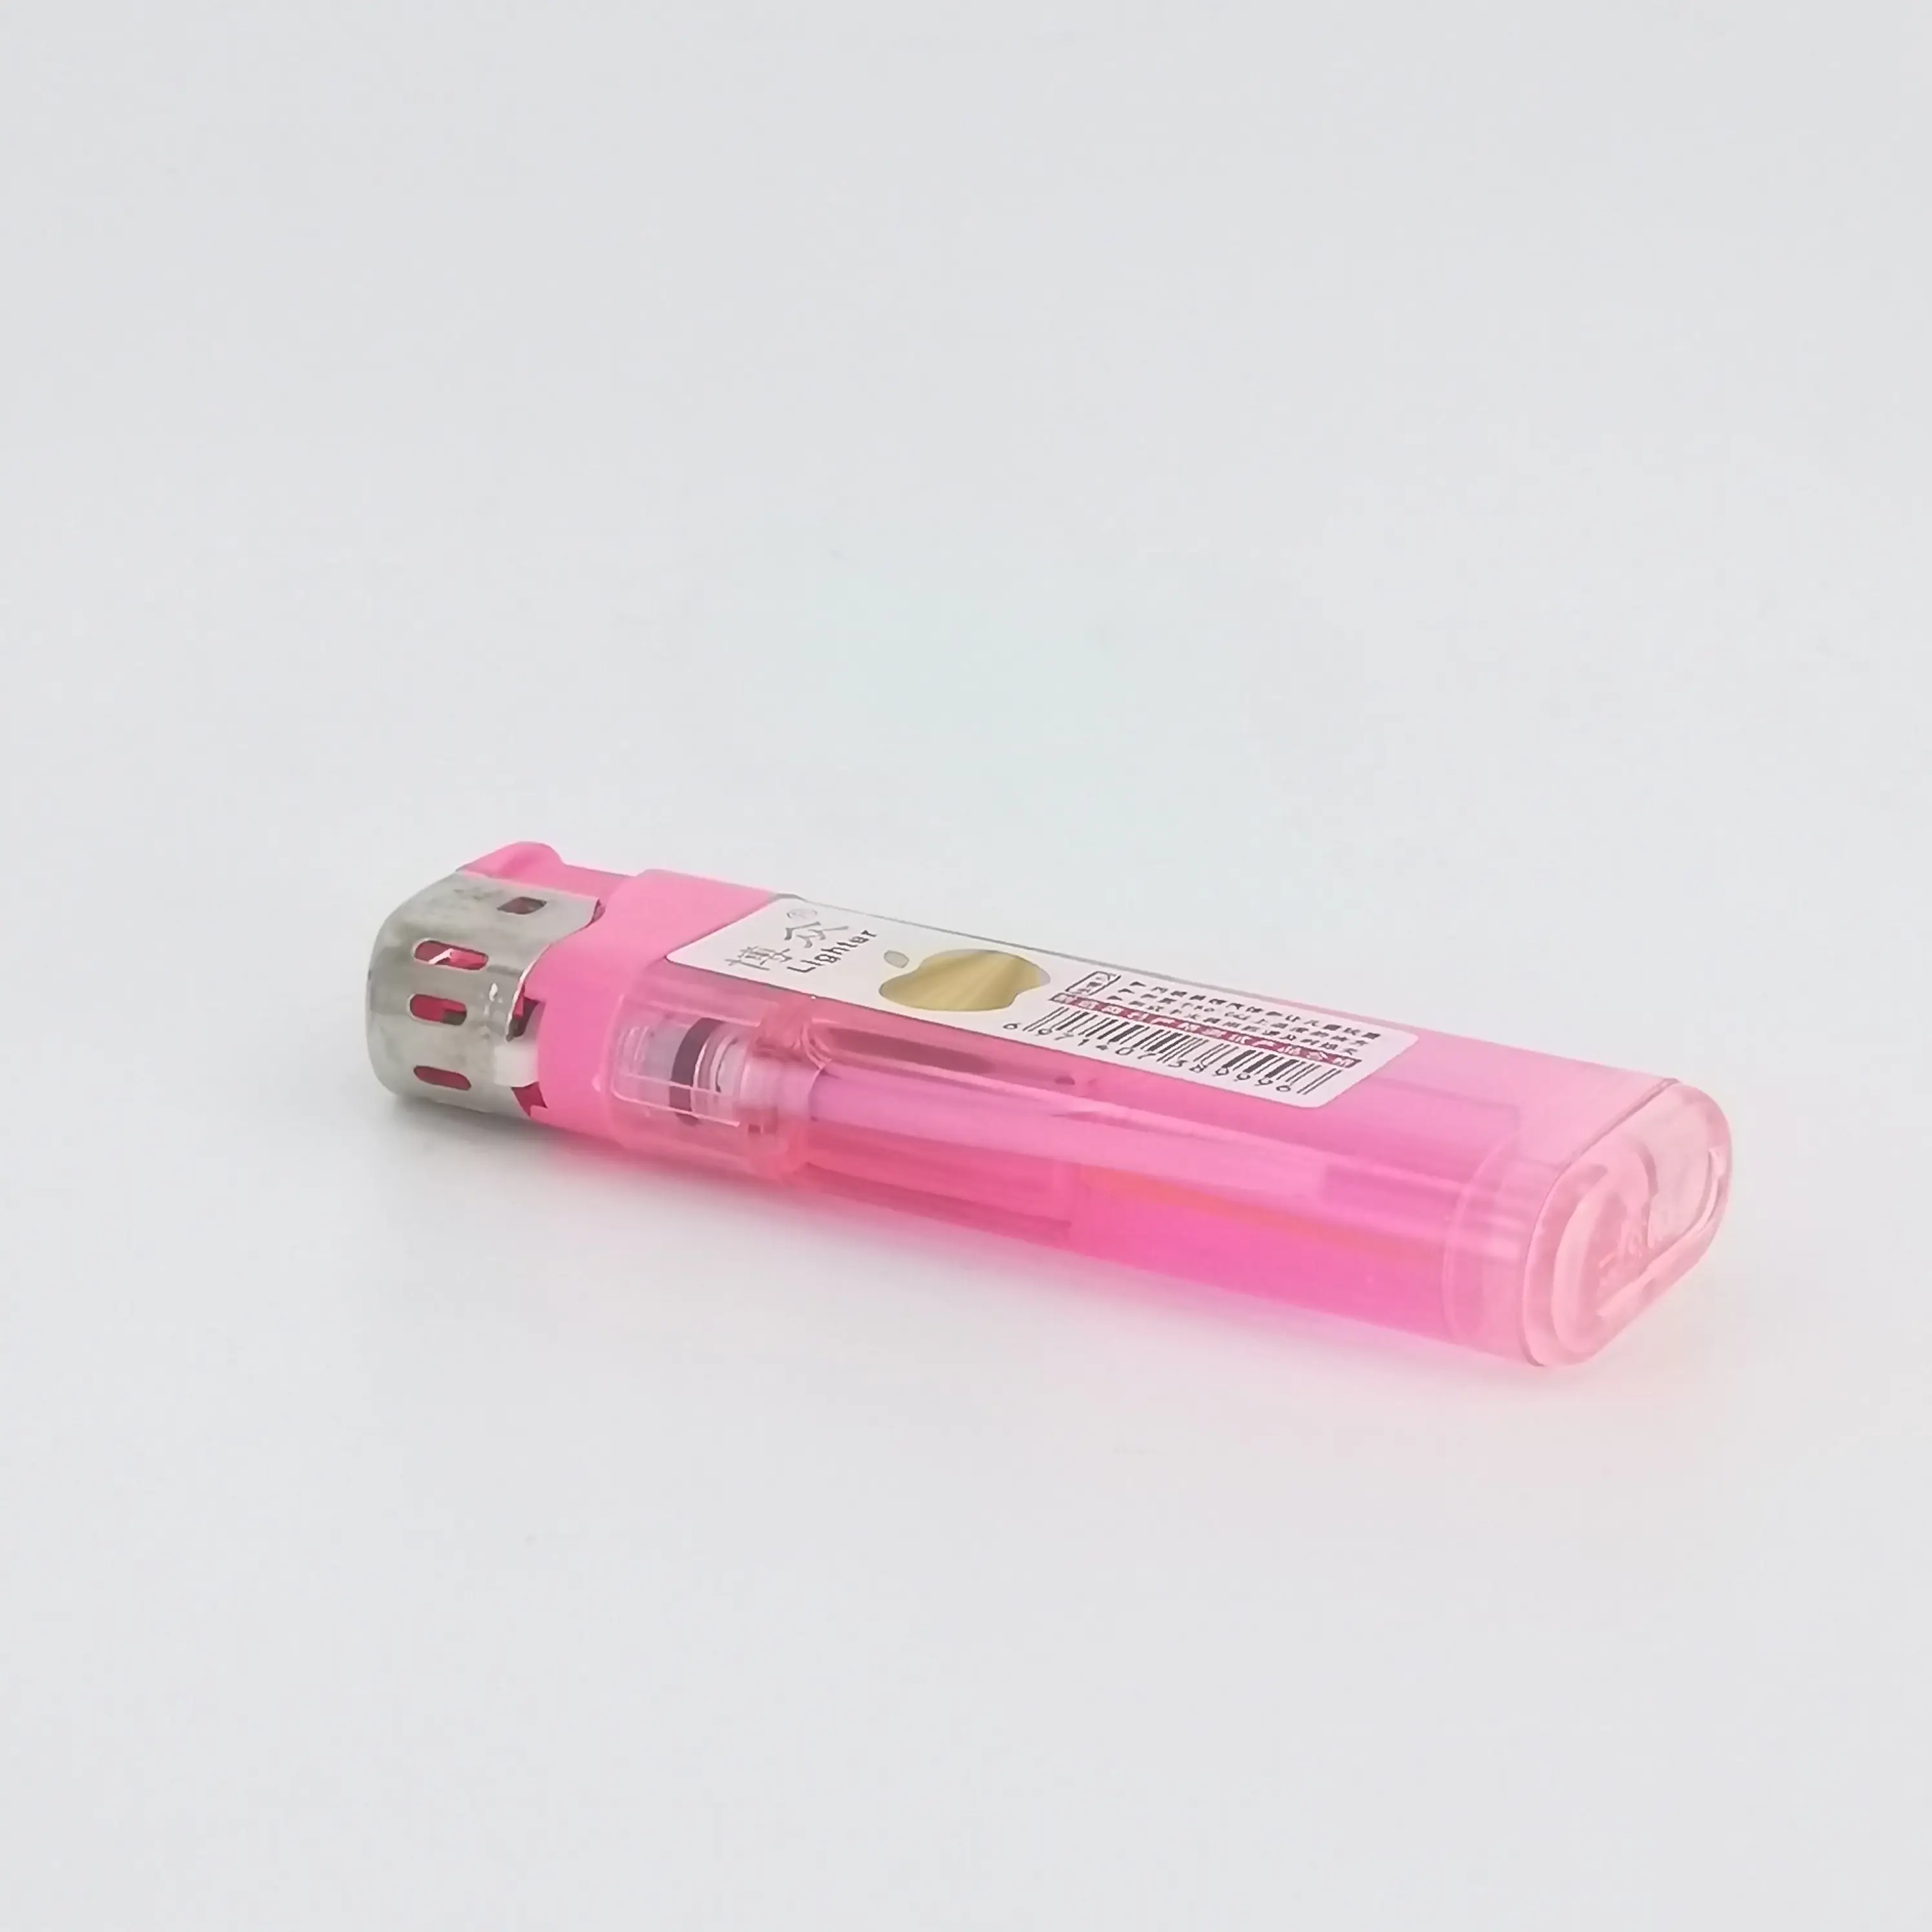 Piccolo mobile della novità sigaretta bastone elettronico più leggero morbido elettrica premendo 2021 988 migliore vendita